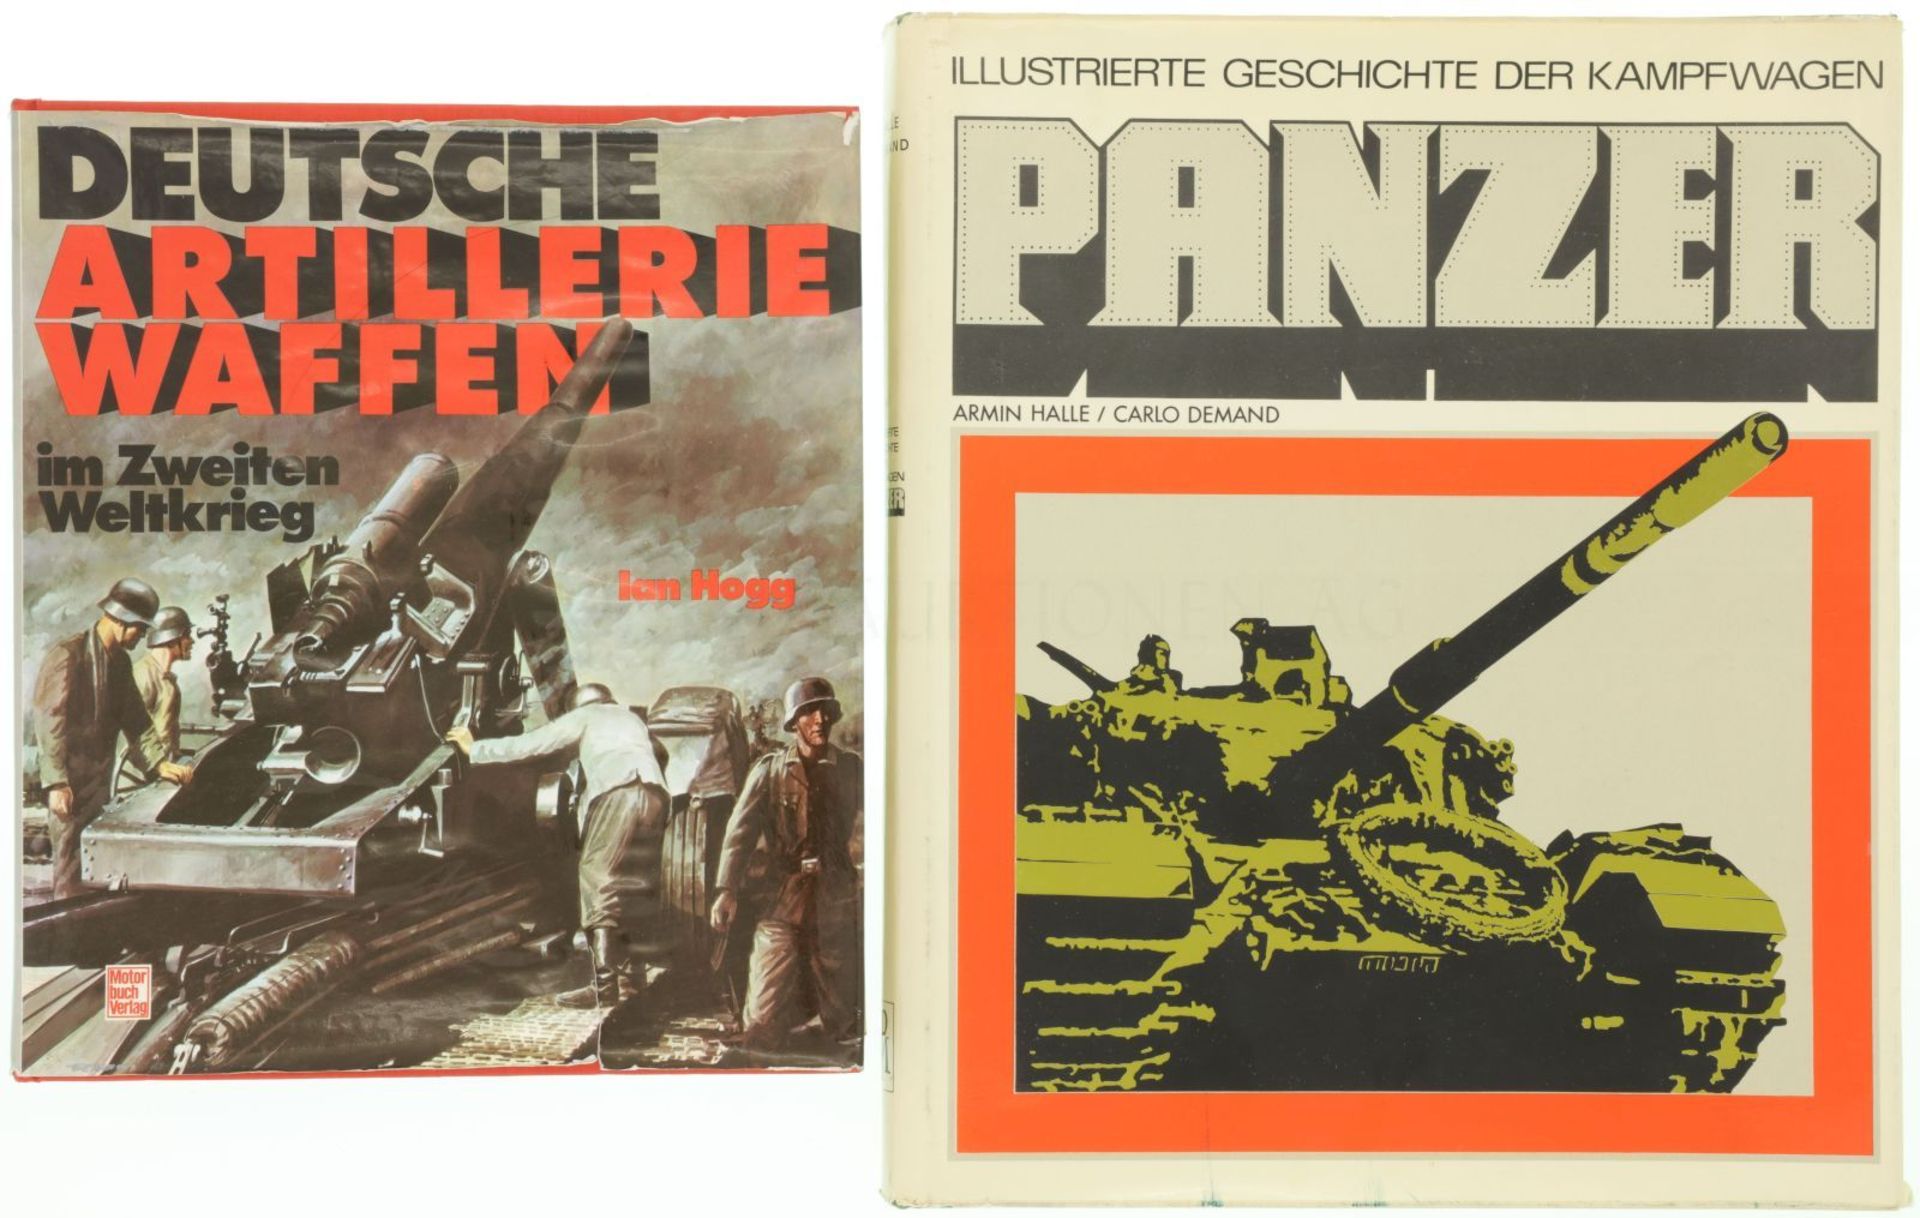 Konvolut von 2 Büchern: Panzer / Deutsche Artilleriewaffen im 2. Weltkrieg